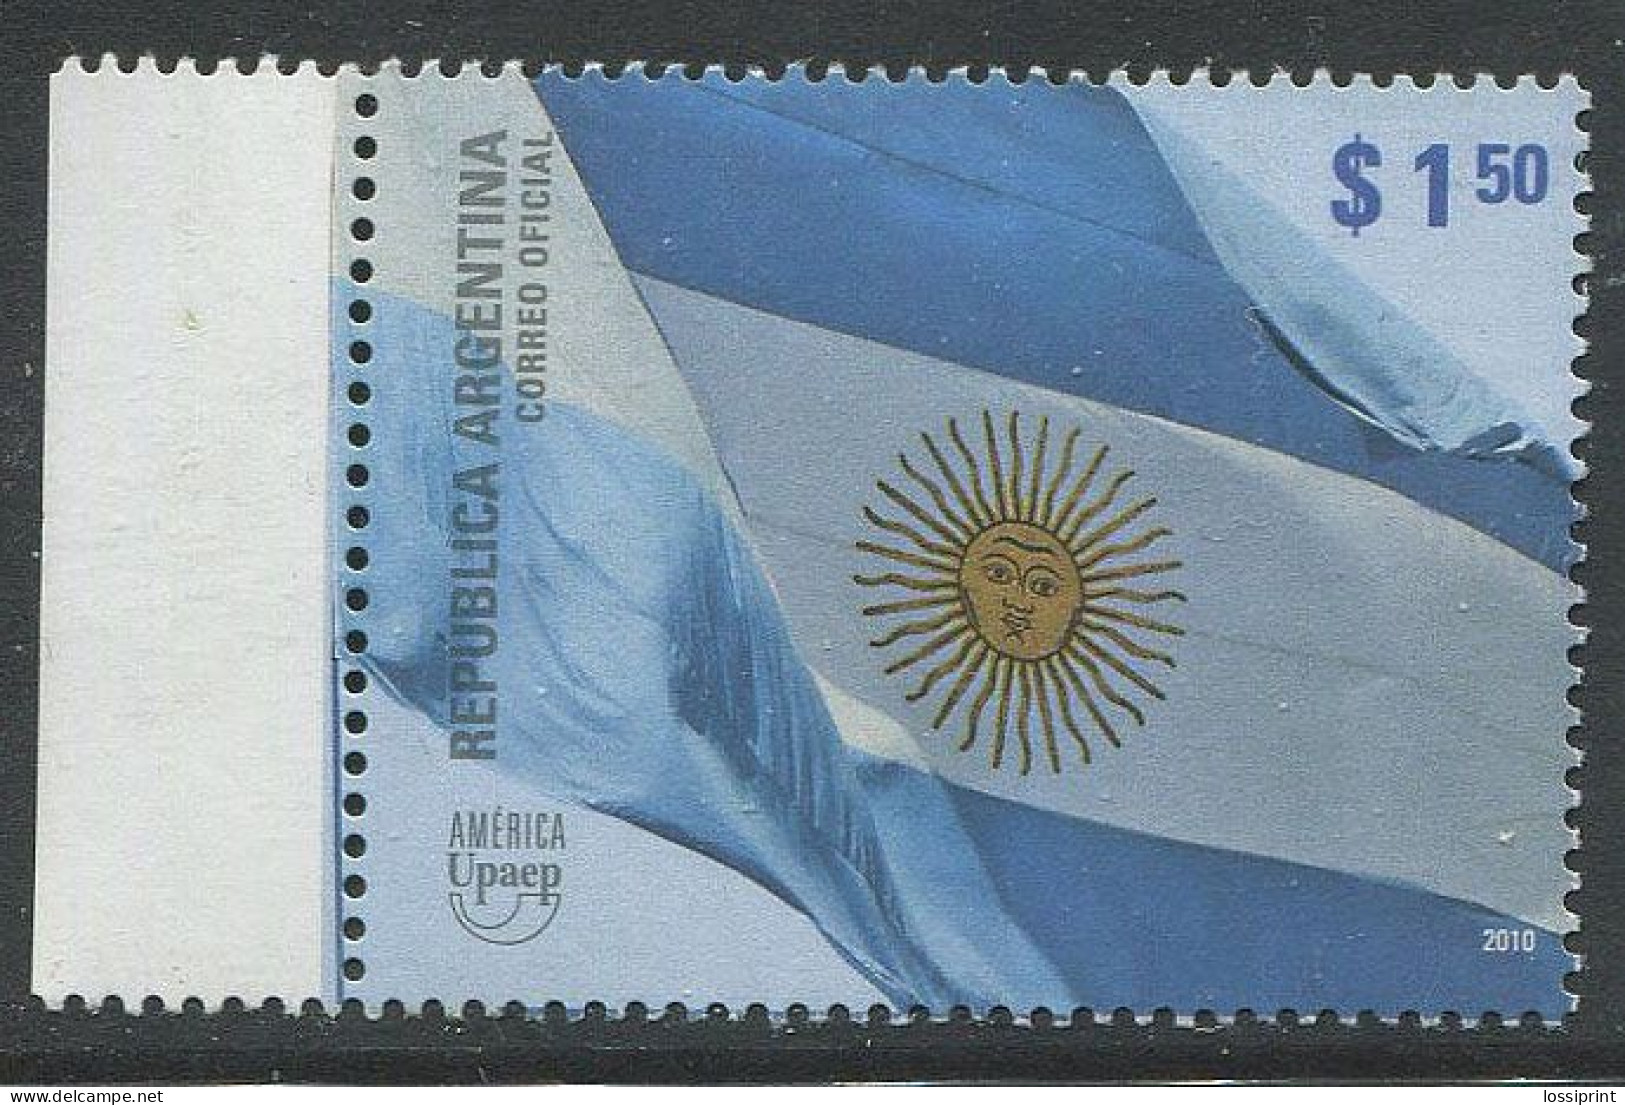 Argentina:Unused Stamp America UPAEP, 2010, MNH - Nuovi